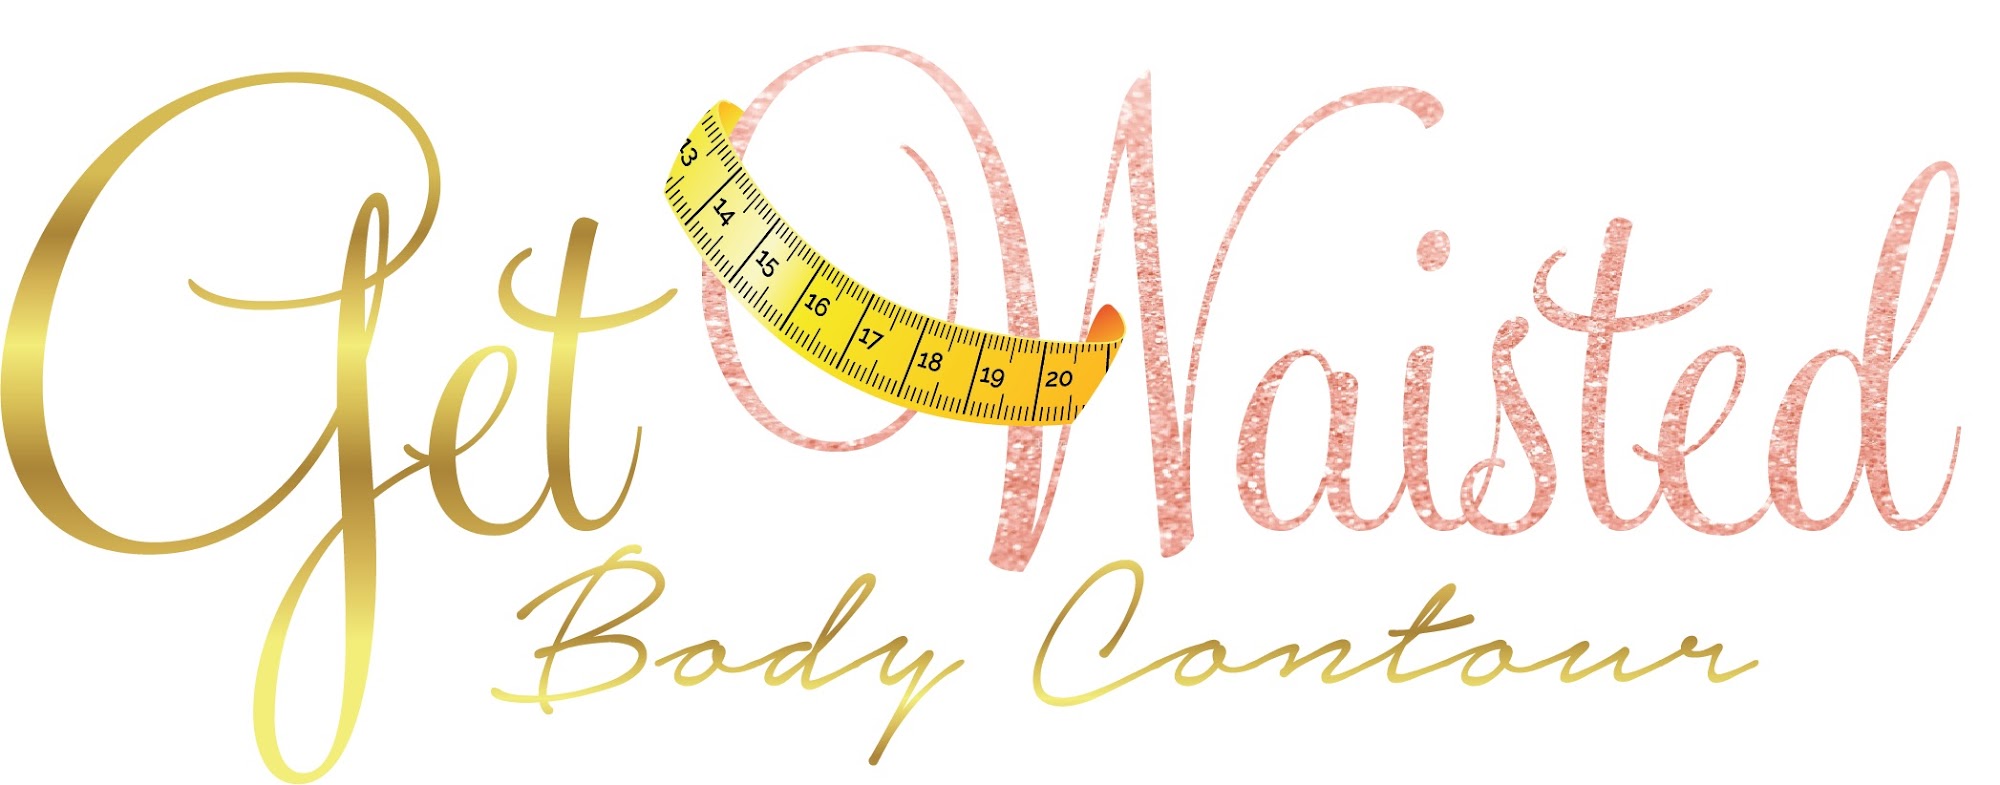 Get Waisted Body contour